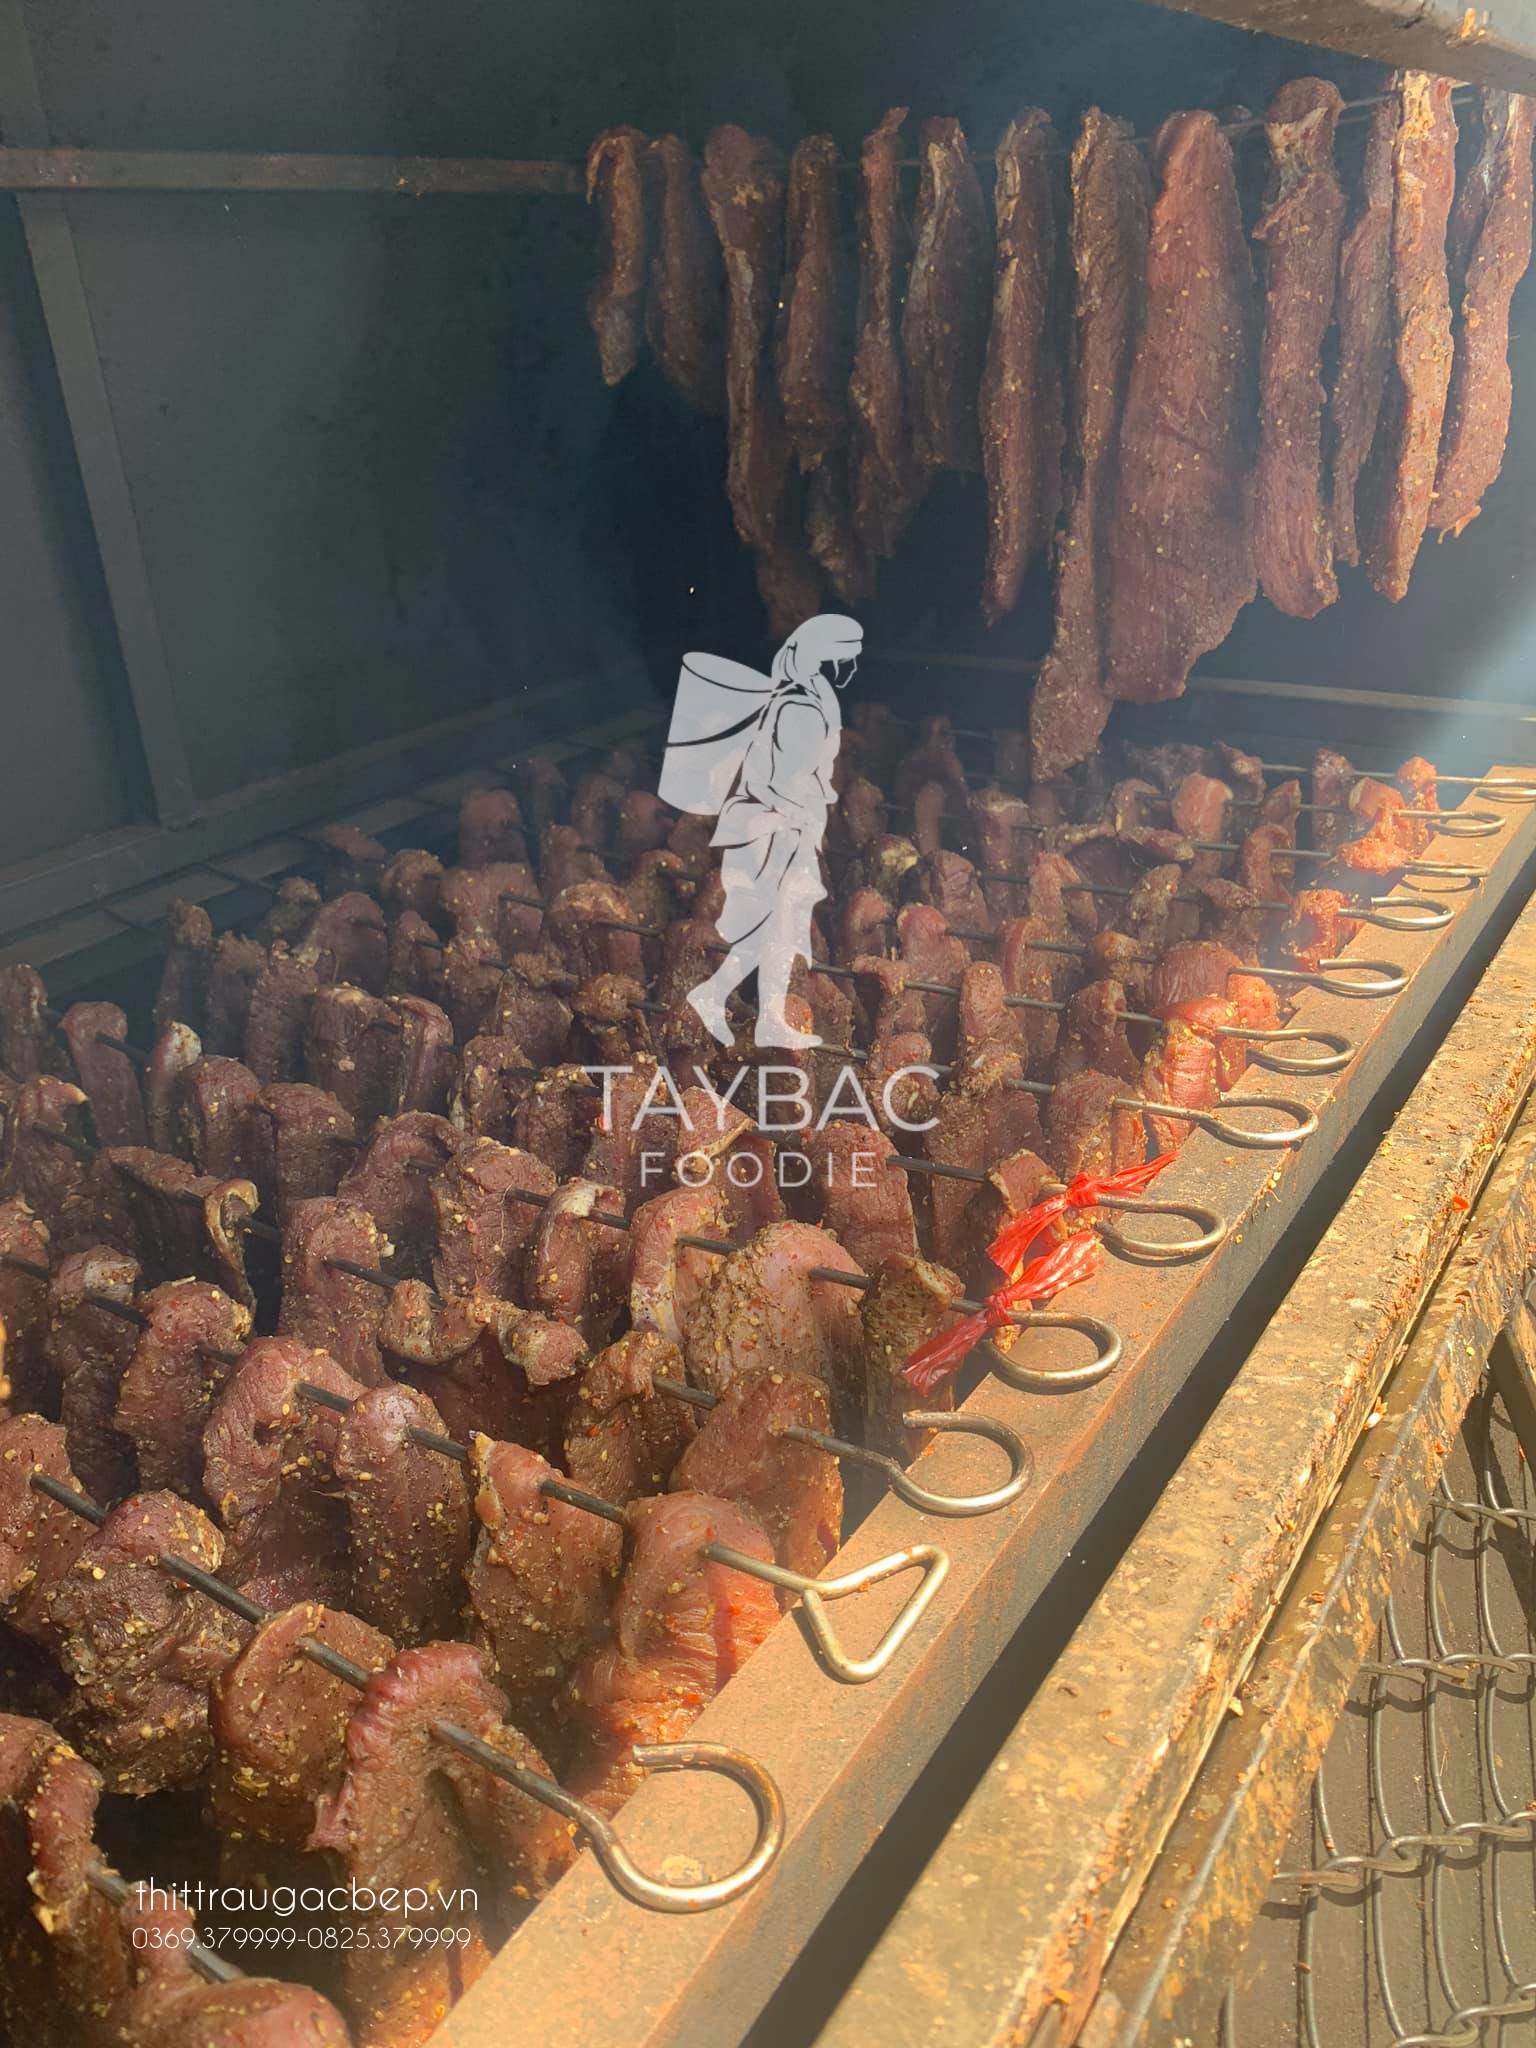 Thịt trâu Tây Bắc được sấy khô thủ công bằng củi trong các lò sấy.